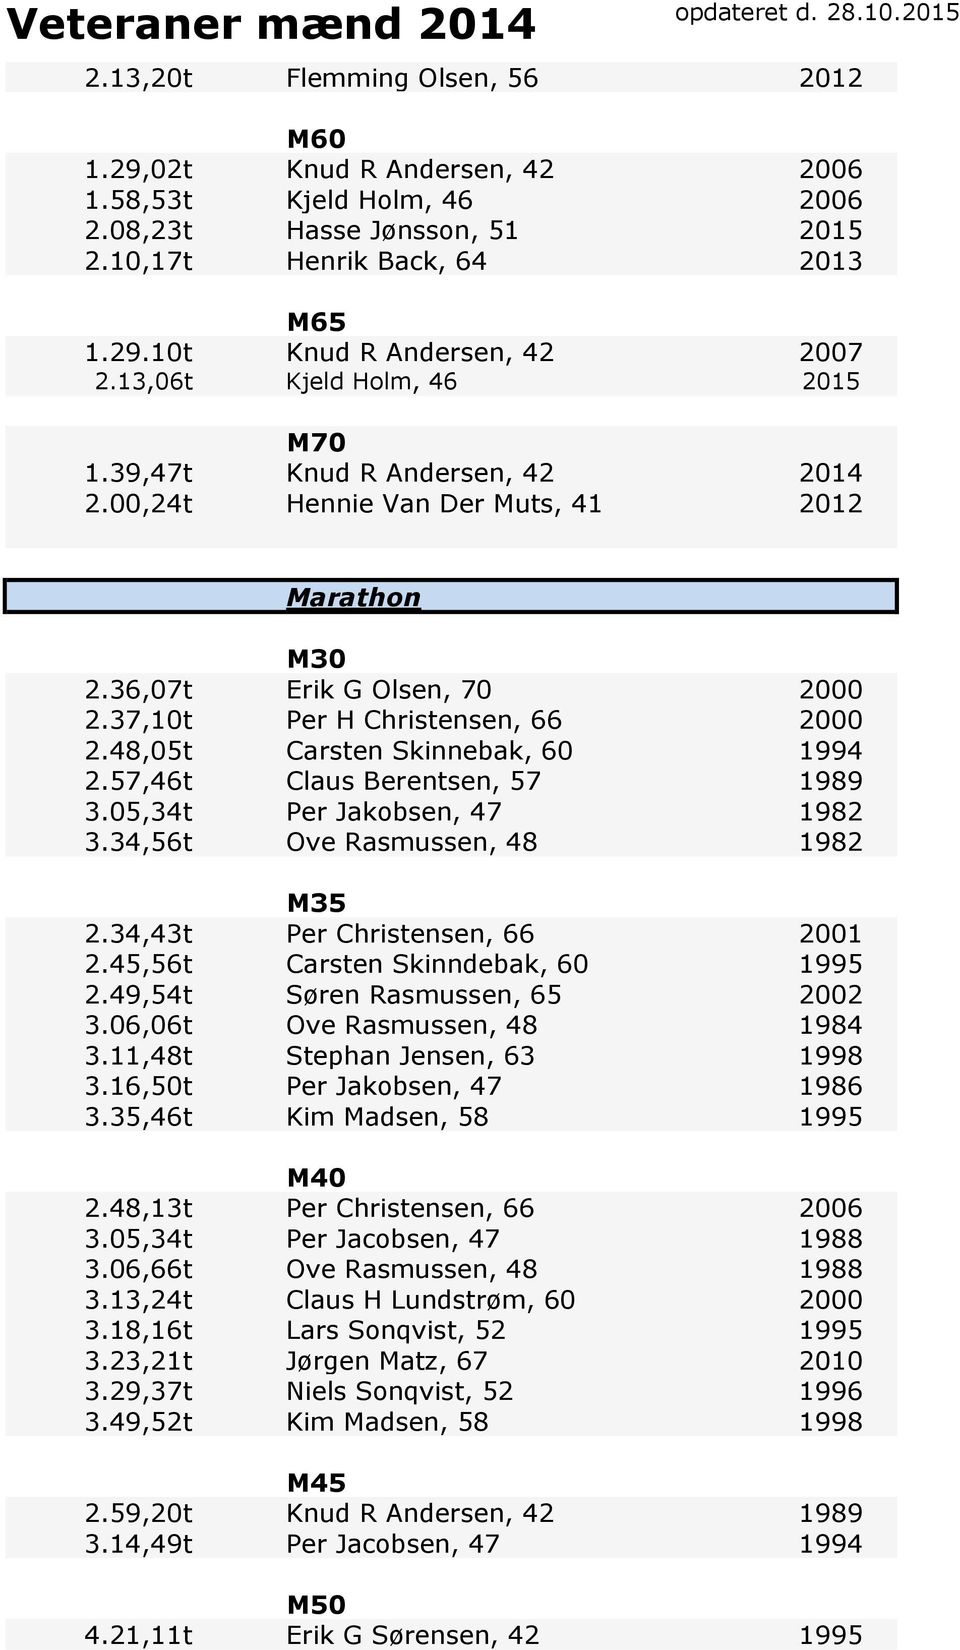 48,05t Carsten Skinnebak, 60 1994 2.57,46t Claus Berentsen, 57 1989 3.05,34t Per Jakobsen, 47 1982 3.34,56t Ove Rasmussen, 48 1982 2.34,43t Per Christensen, 66 2001 2.